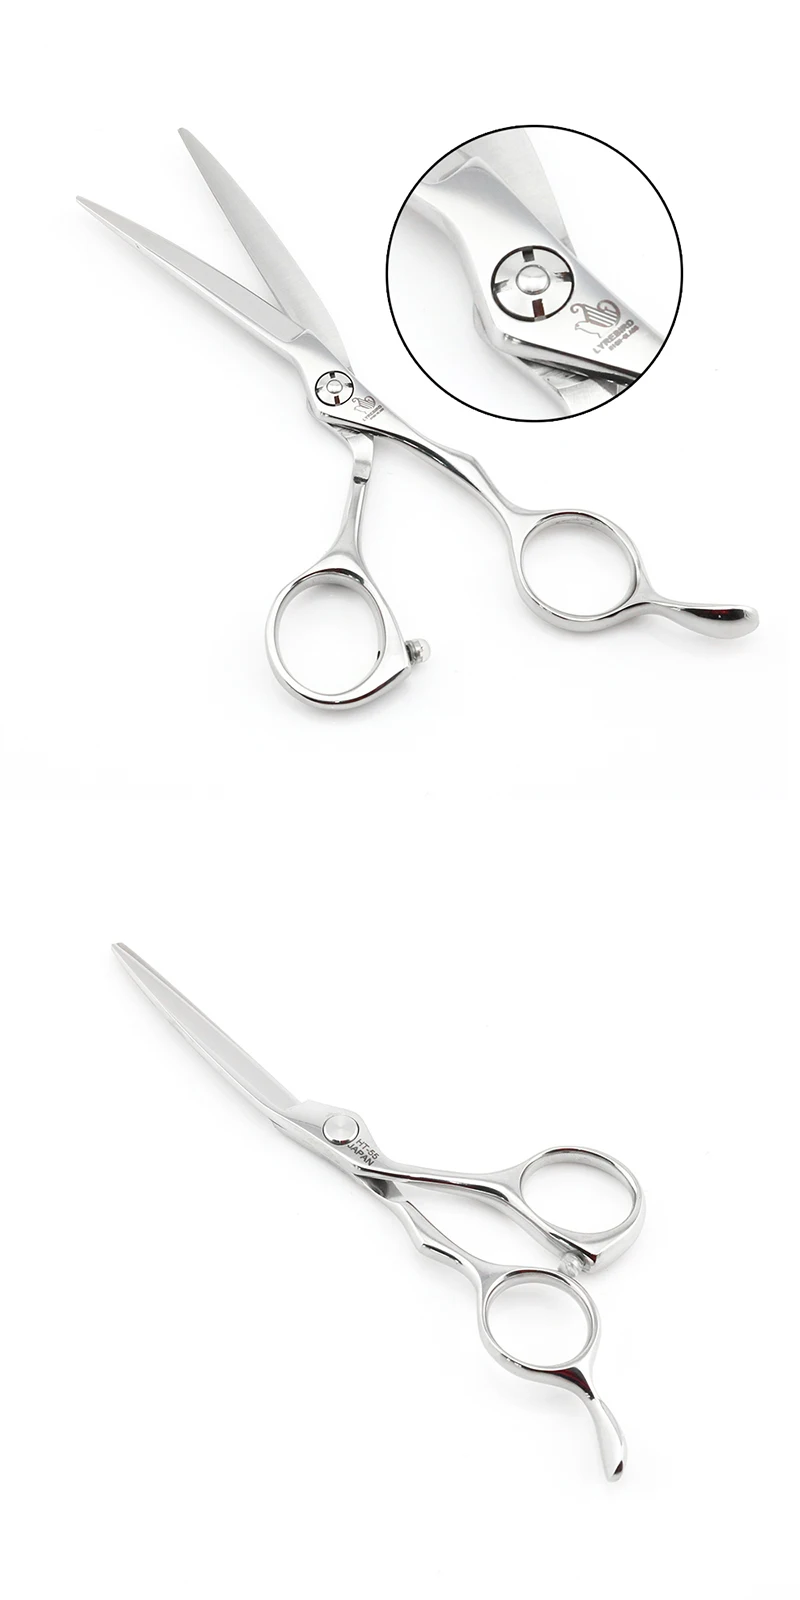 Ножницы для волос раздвижные 5,5 дюймов Парикмахерские ножницы для волос Япония 440C Тонкие ножницы точный опорный винт lyrebird Высший